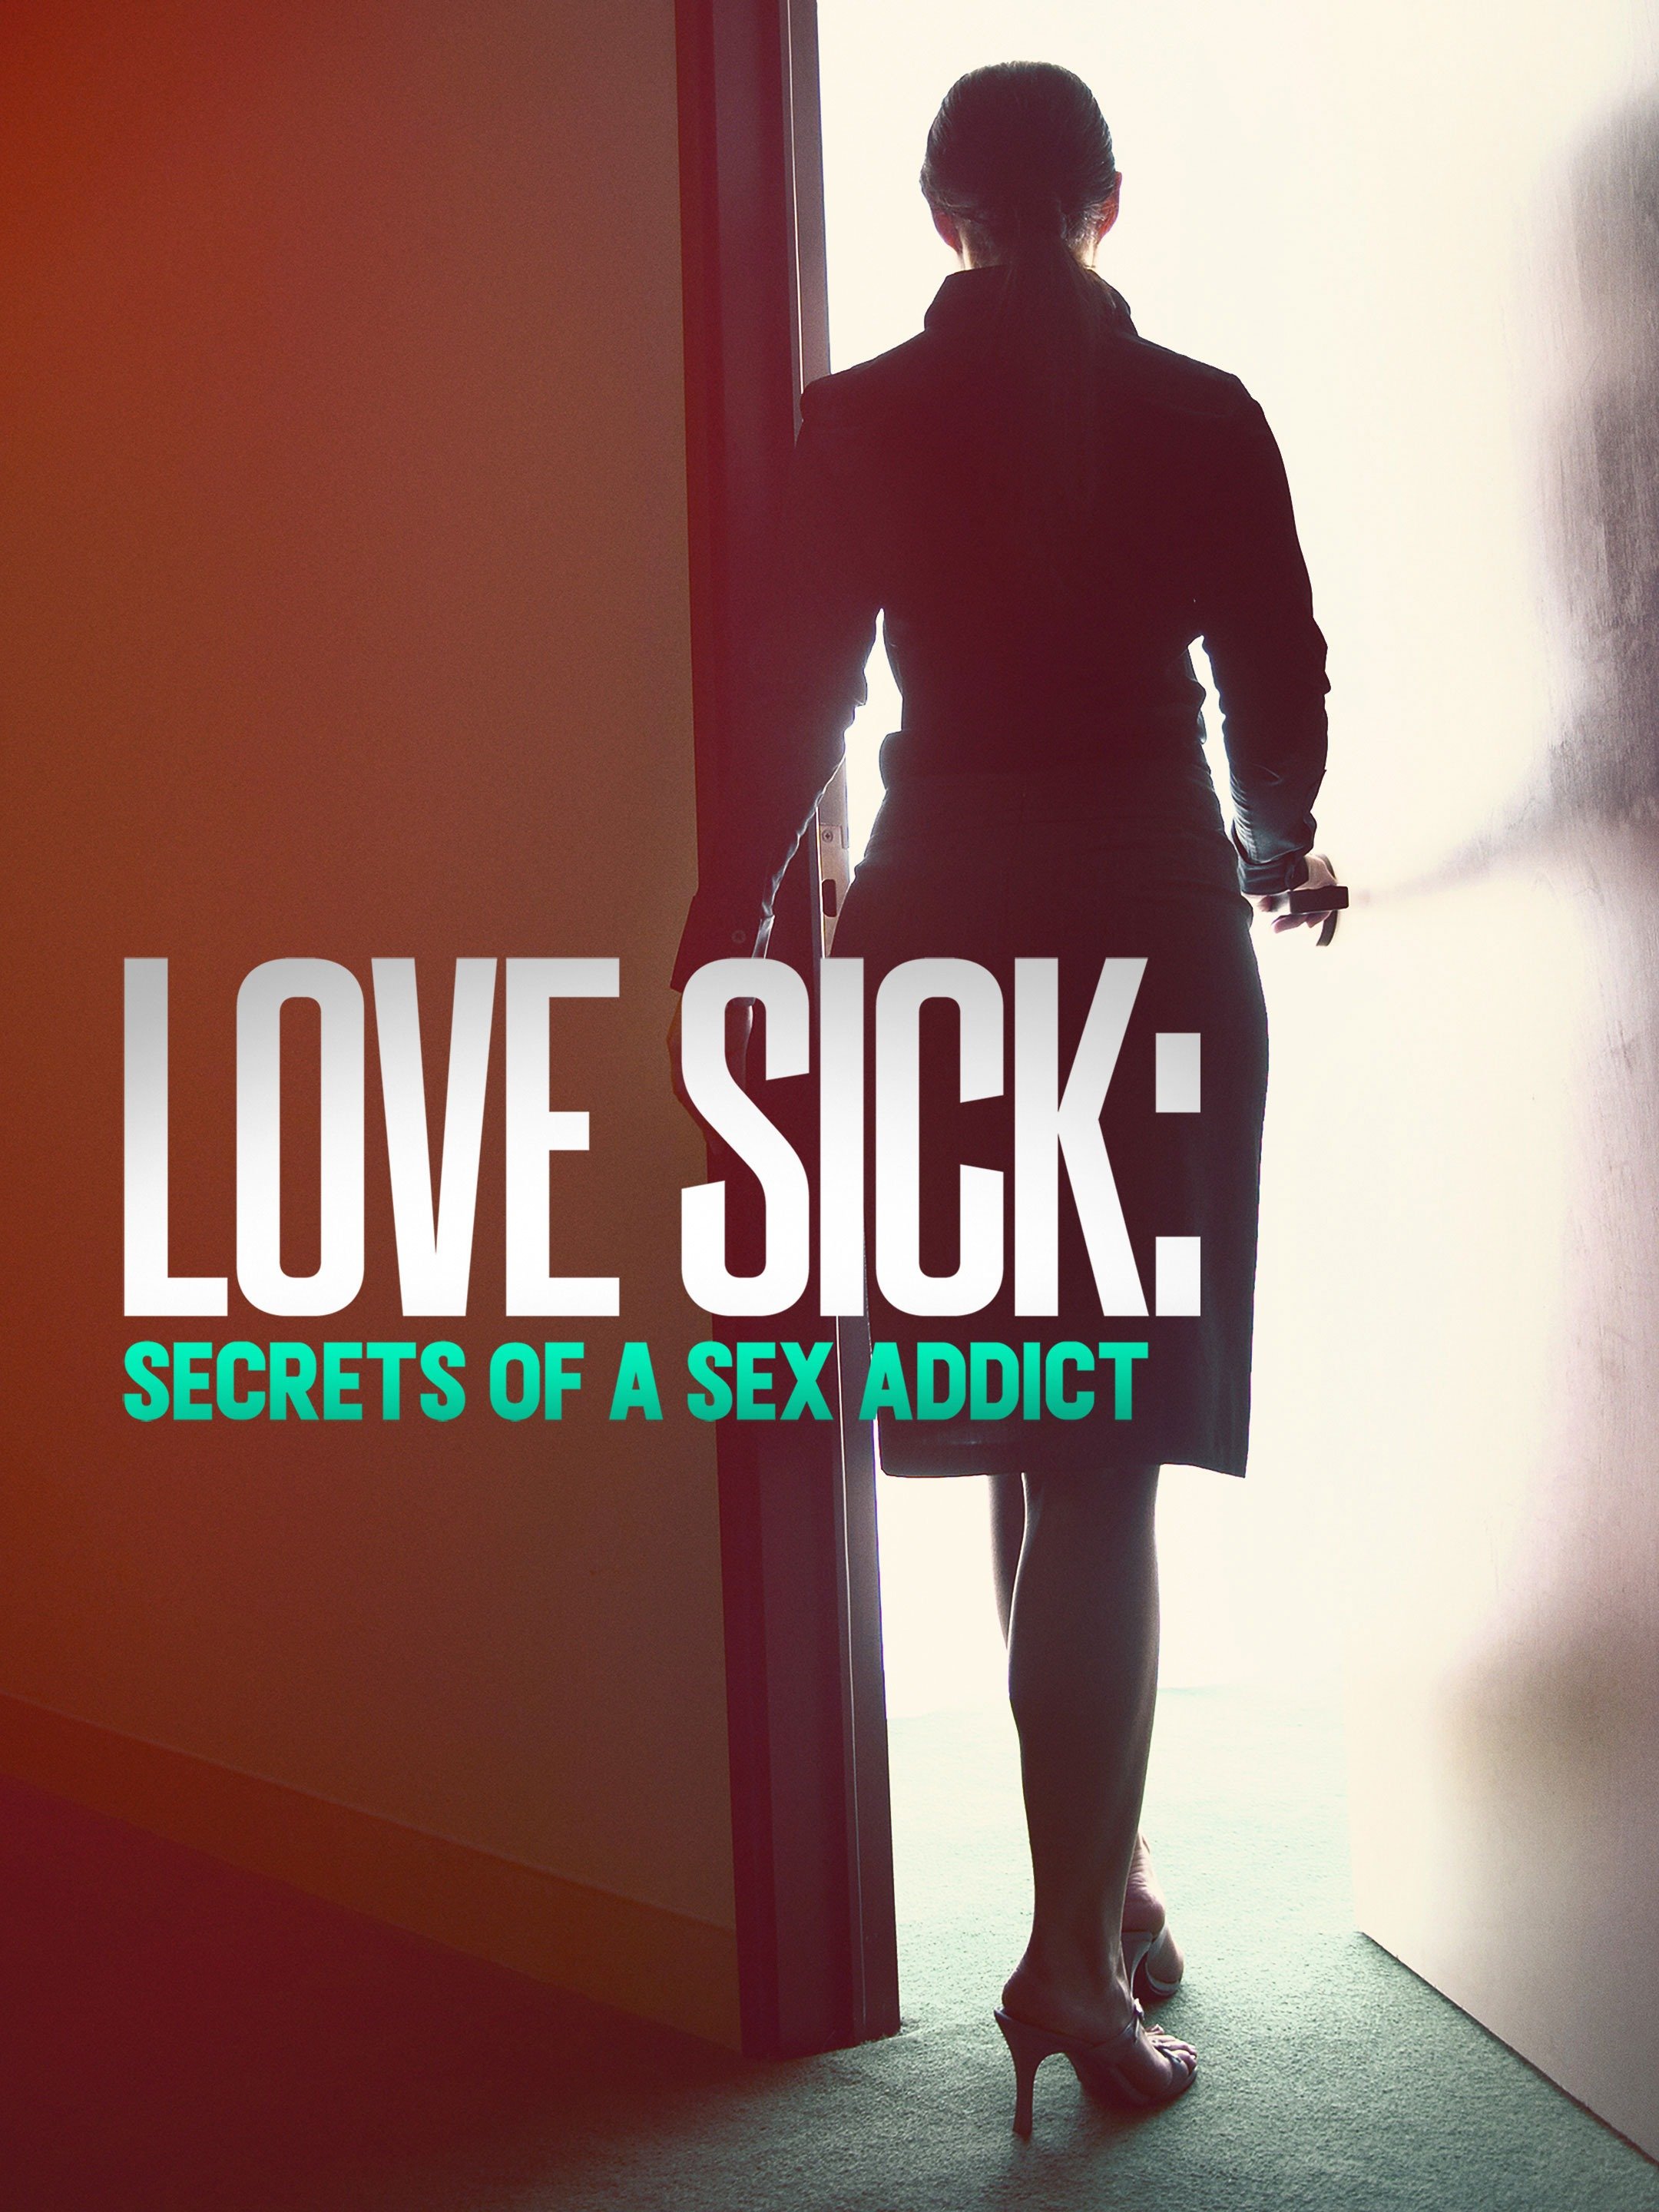 Love sick secrets of a sex addict